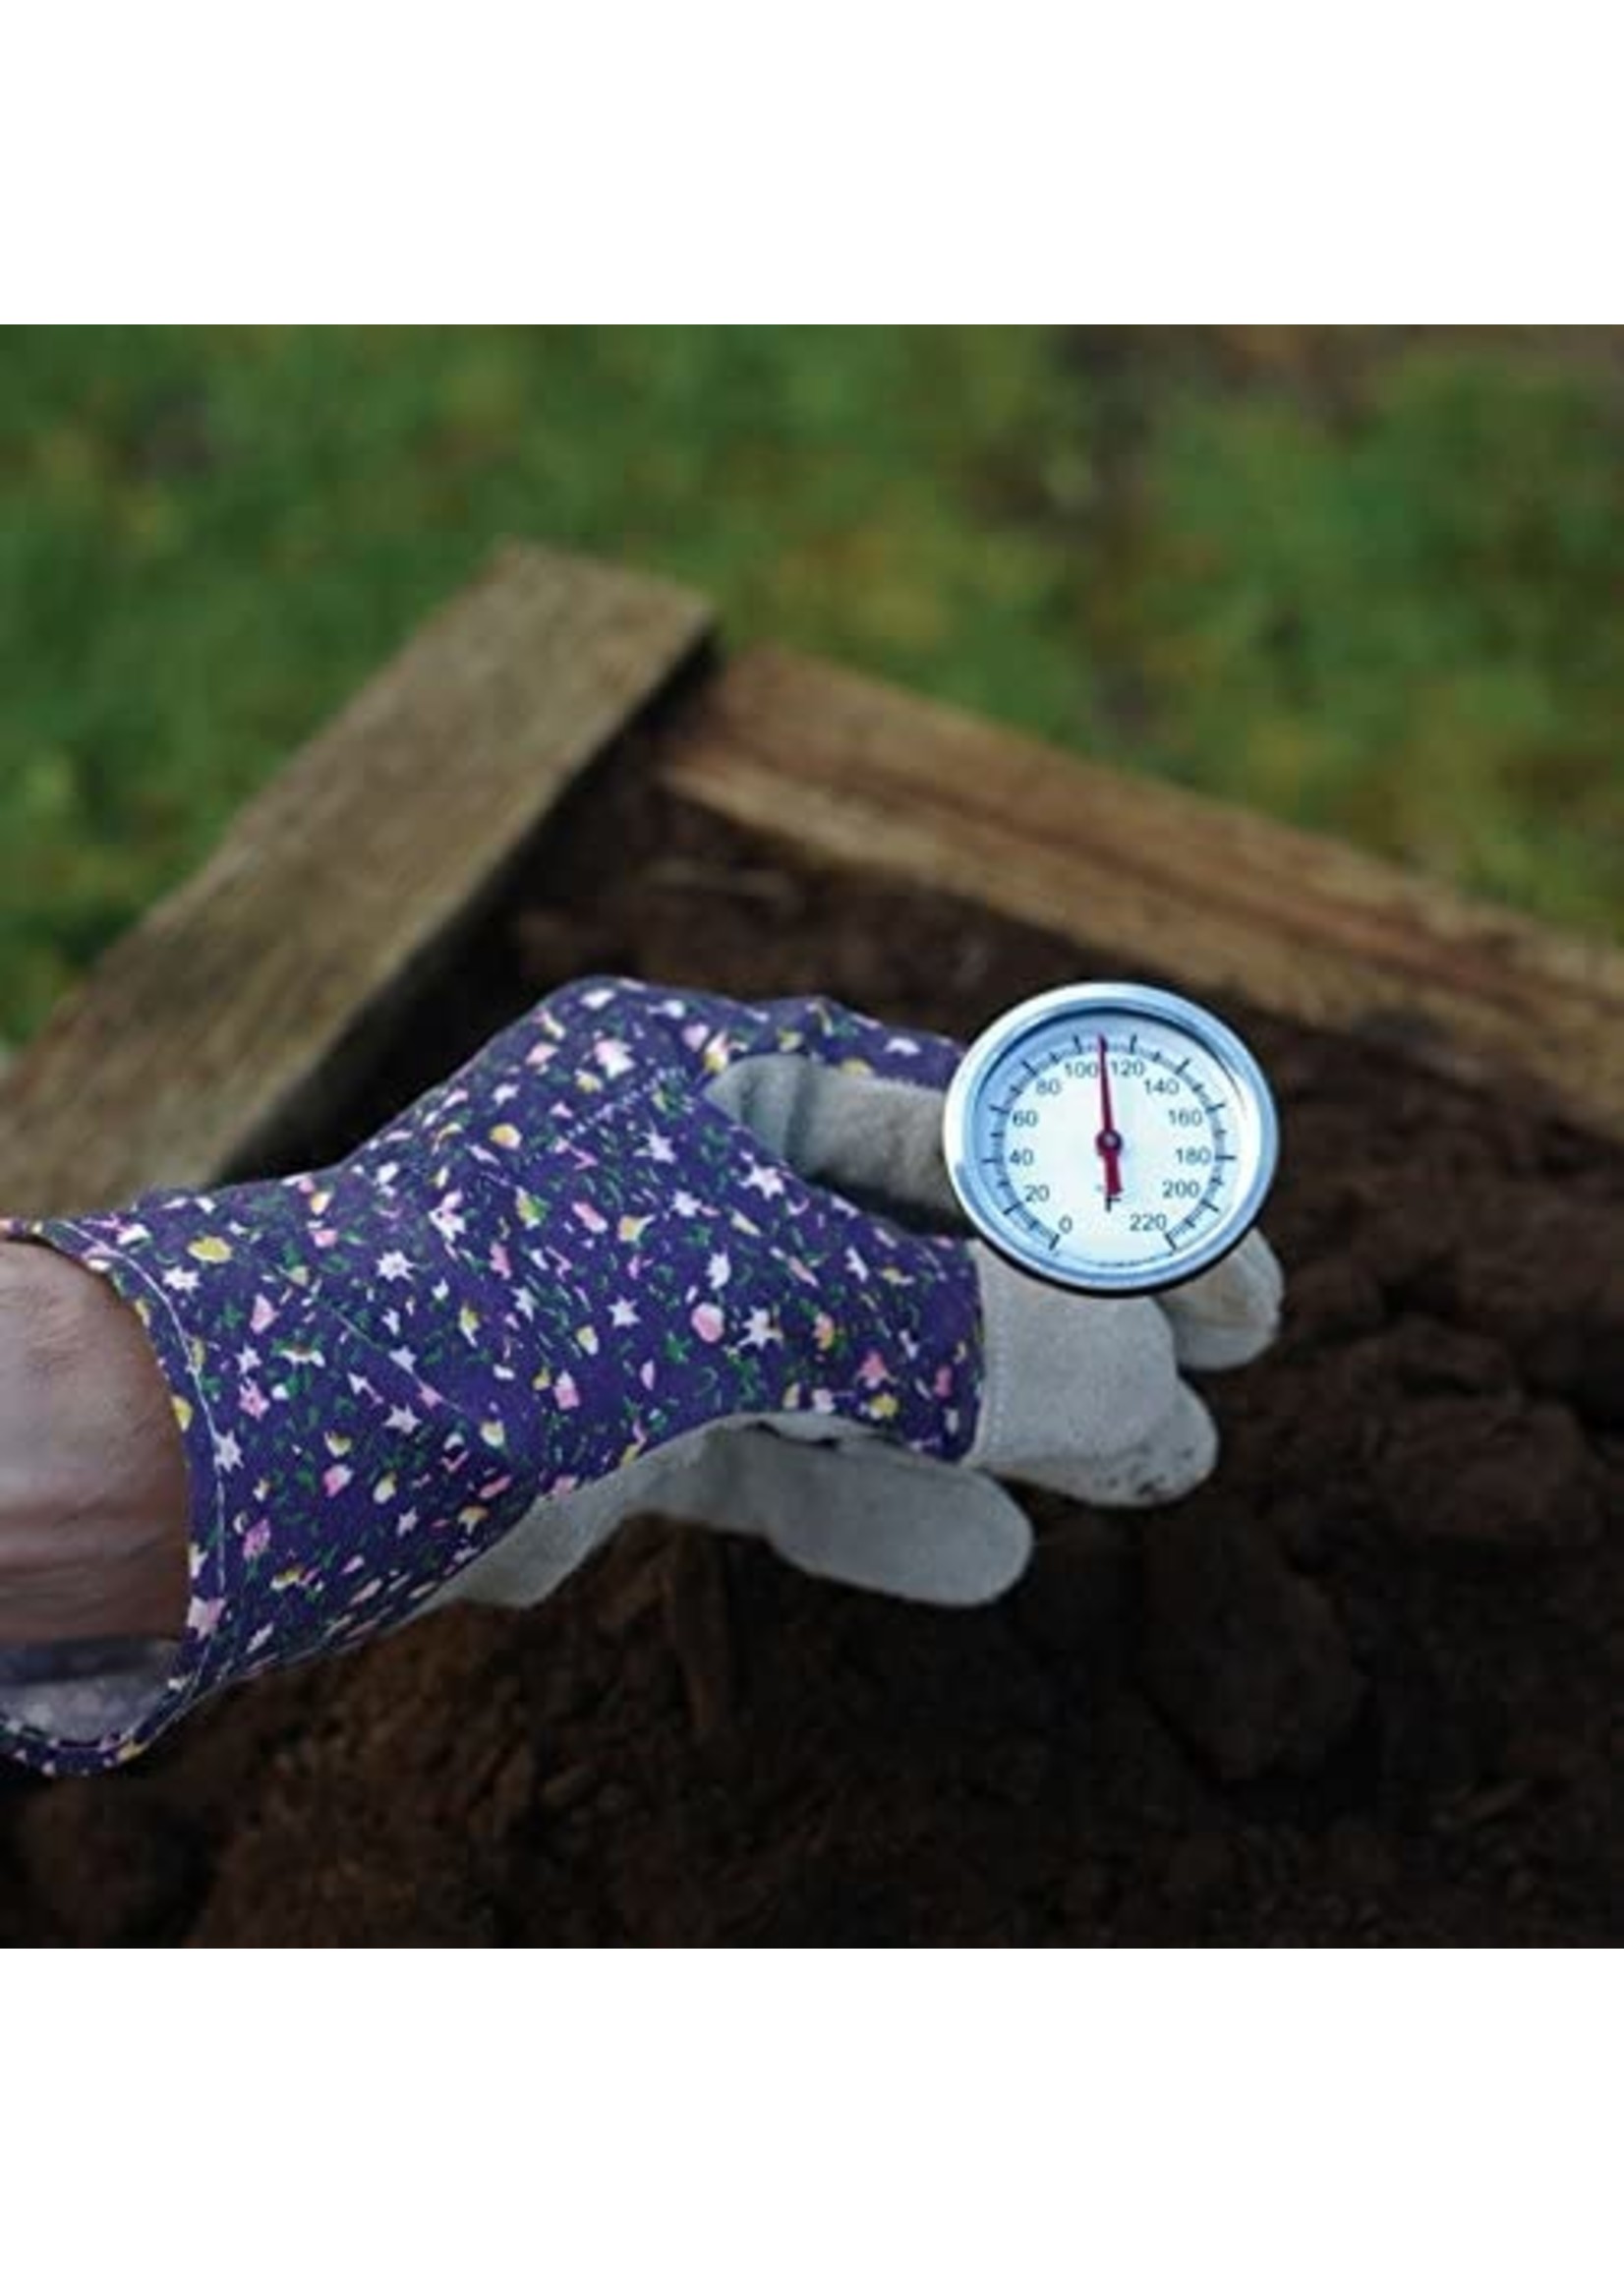 Lusterleaf Lusterleaf Compost Thermometer